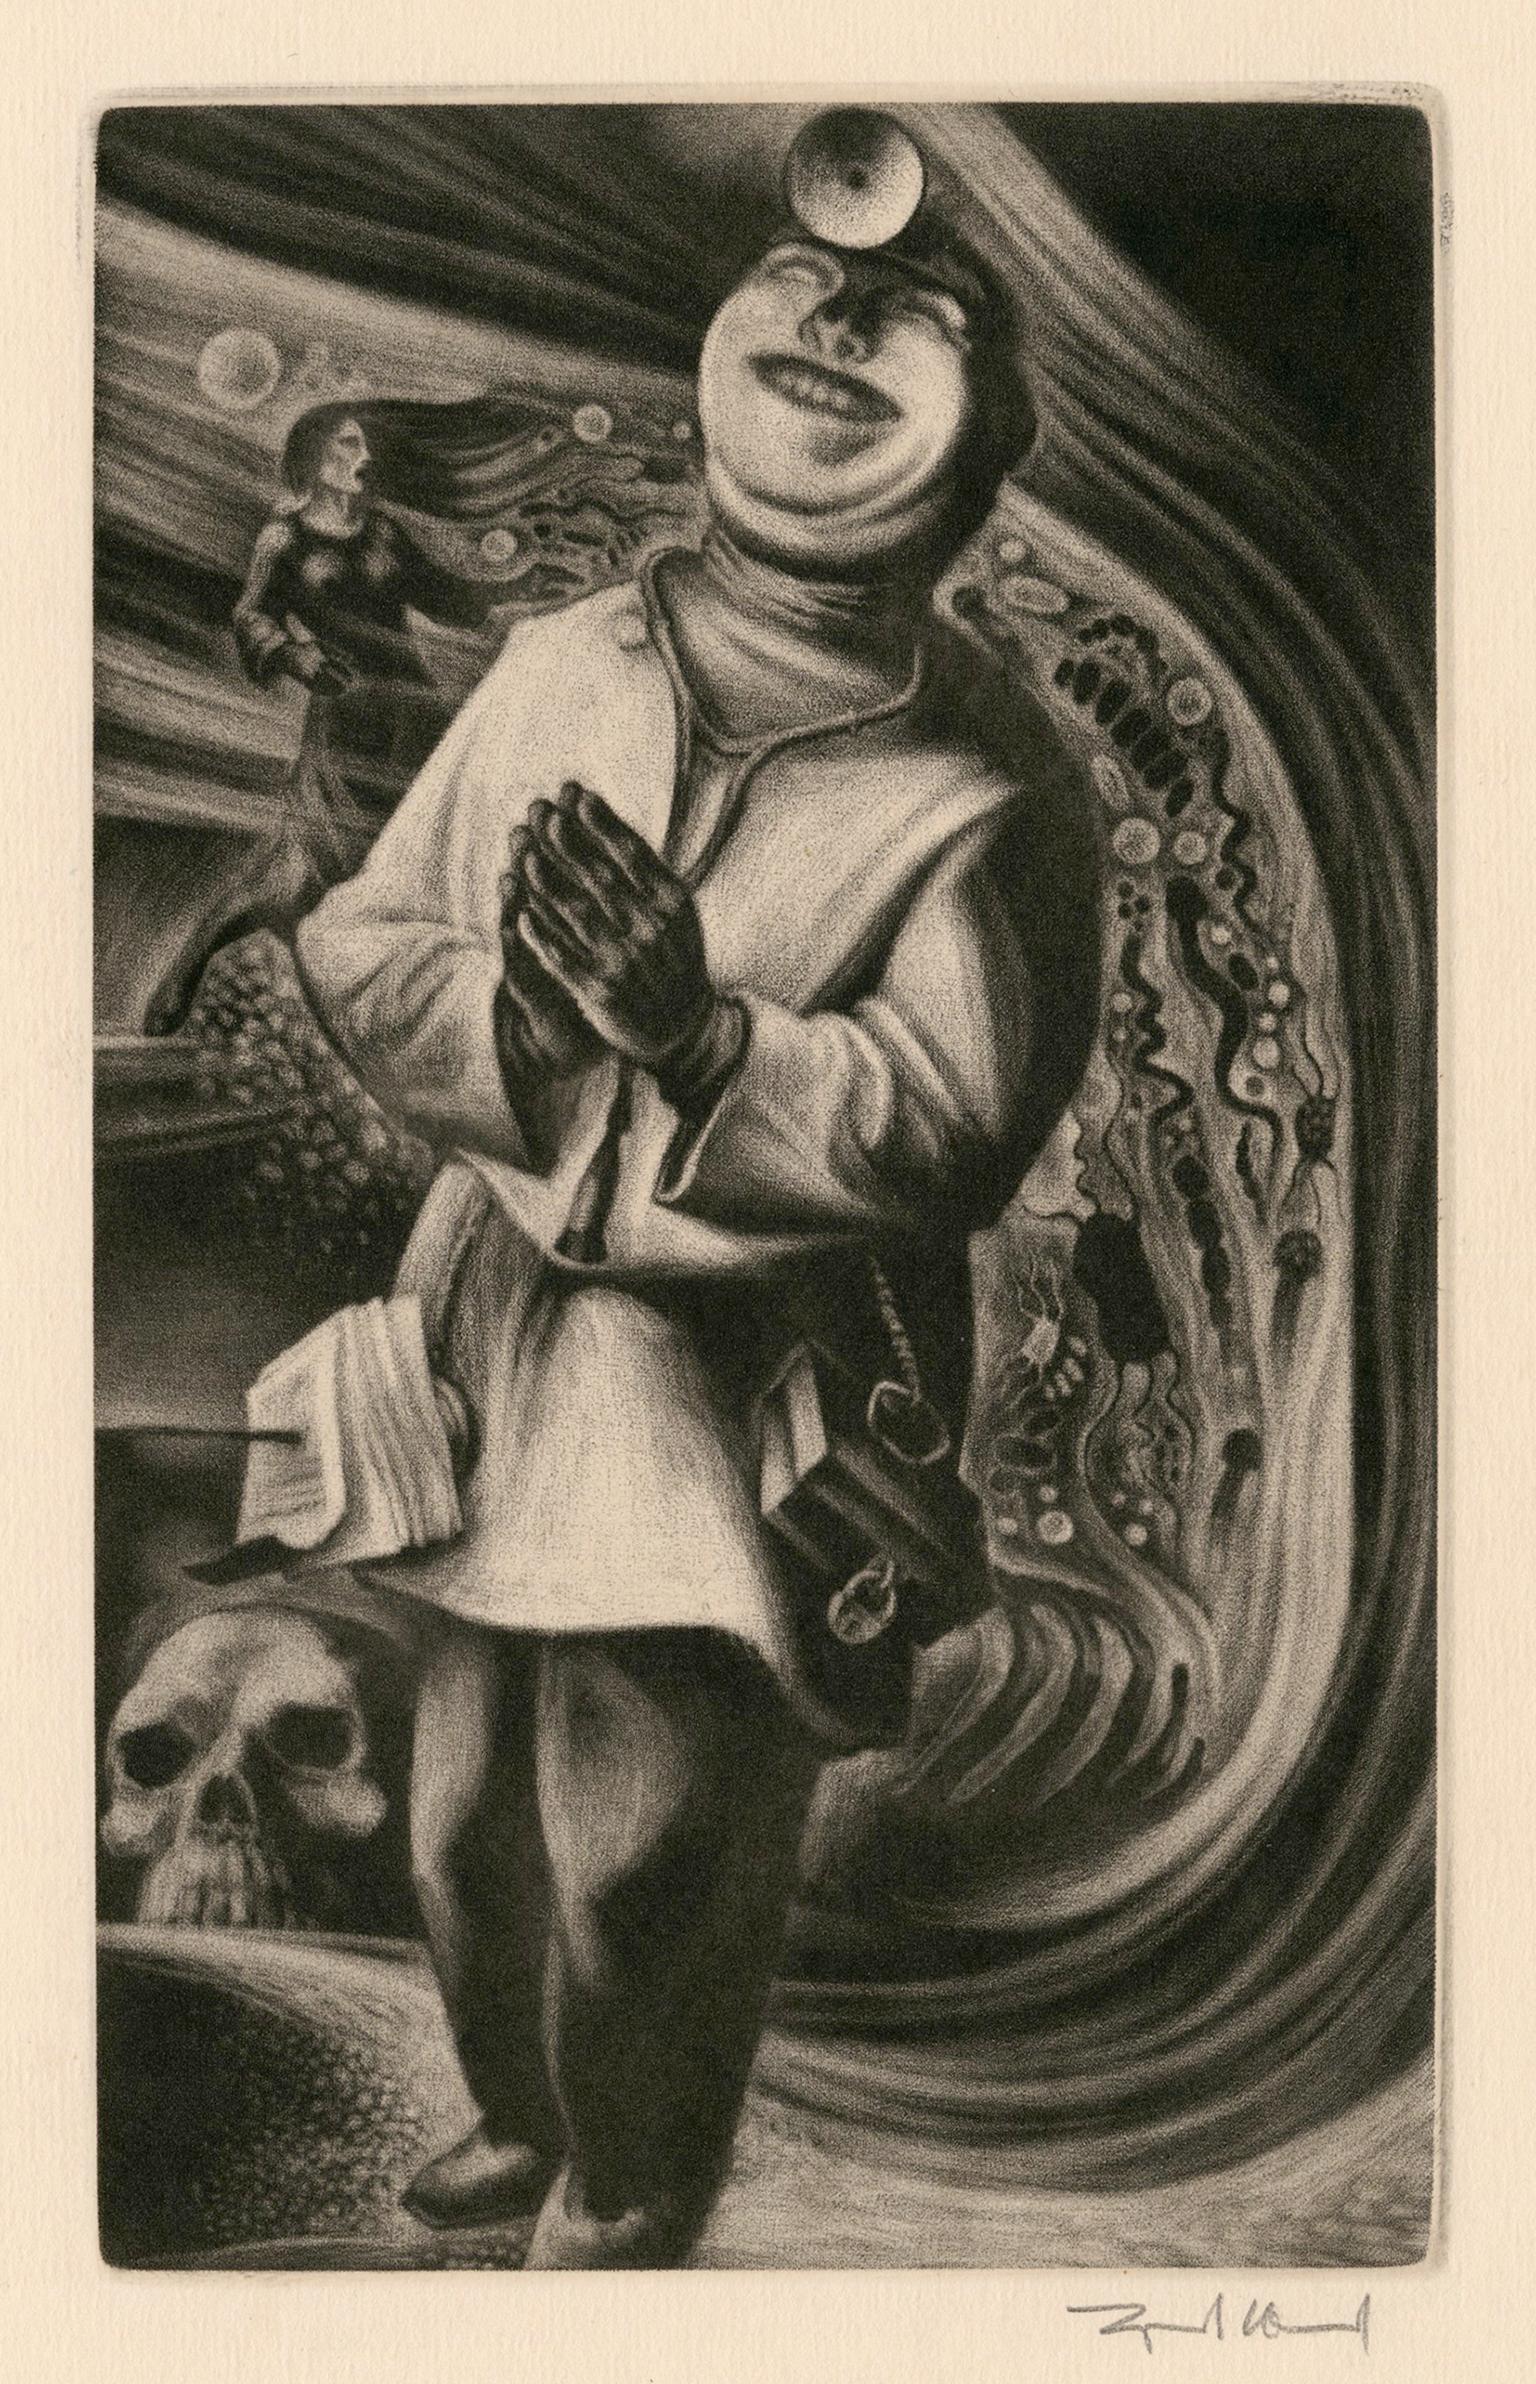 Figurative Print Lynd Ward - Docteur" de "L'éloge de la folie" - Modernisme graphique des années 1940